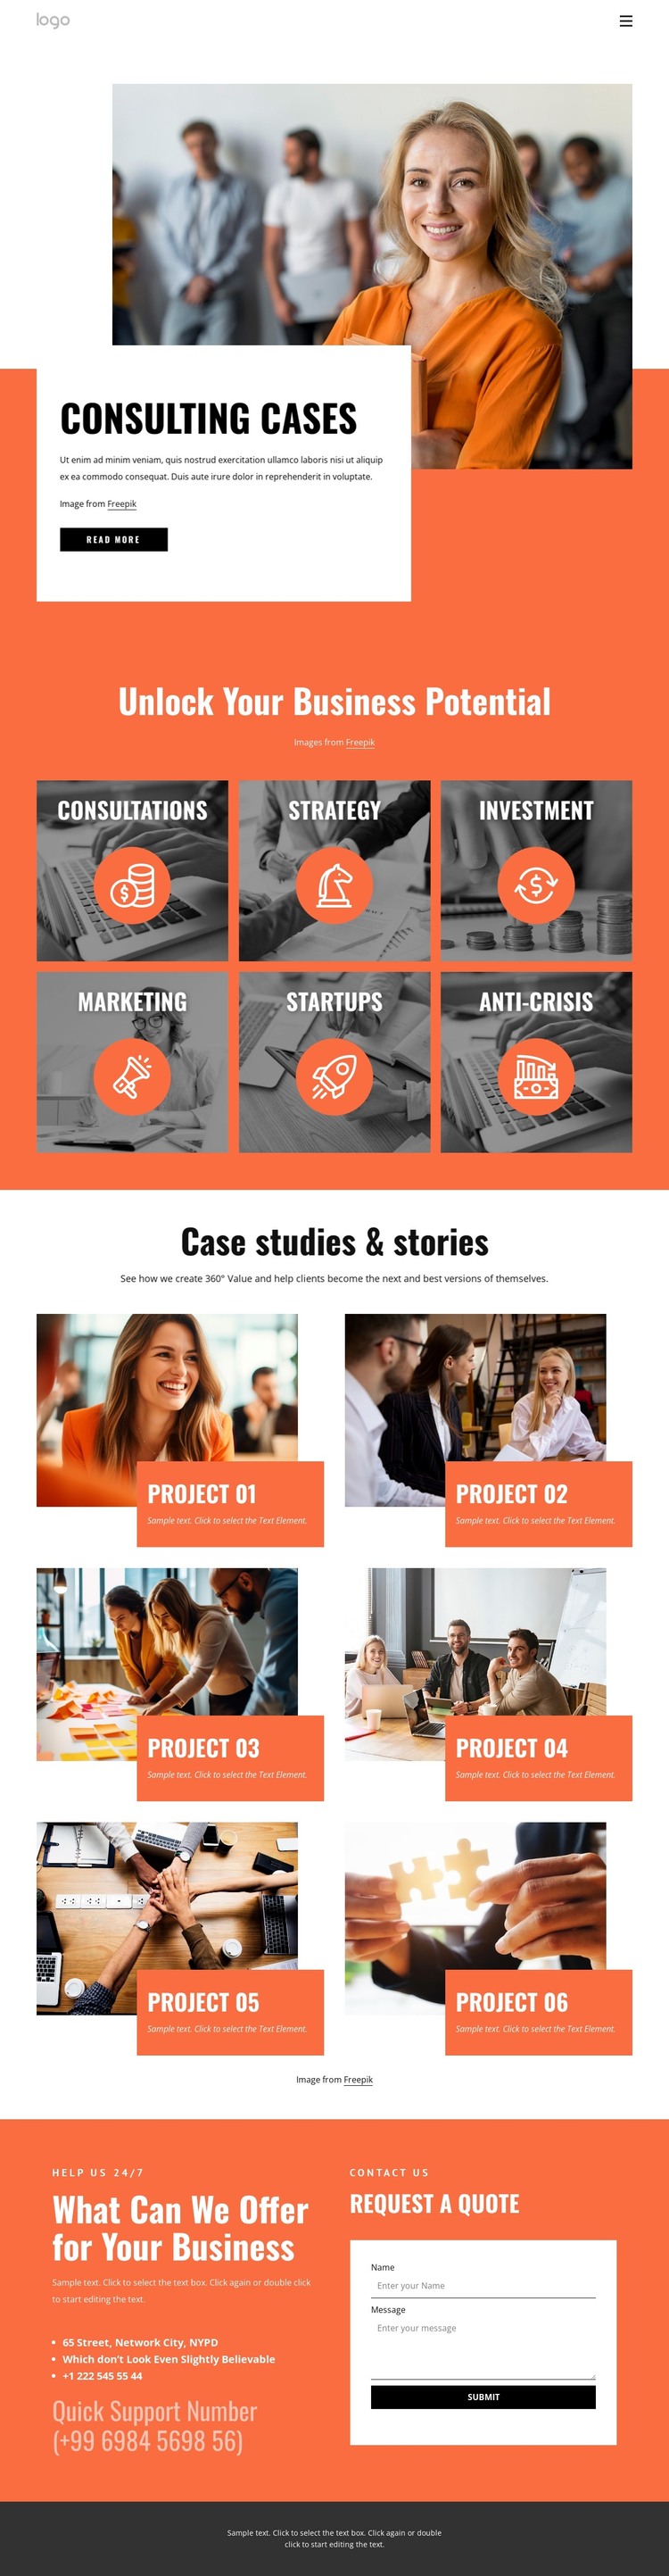 Client success stories Web Design